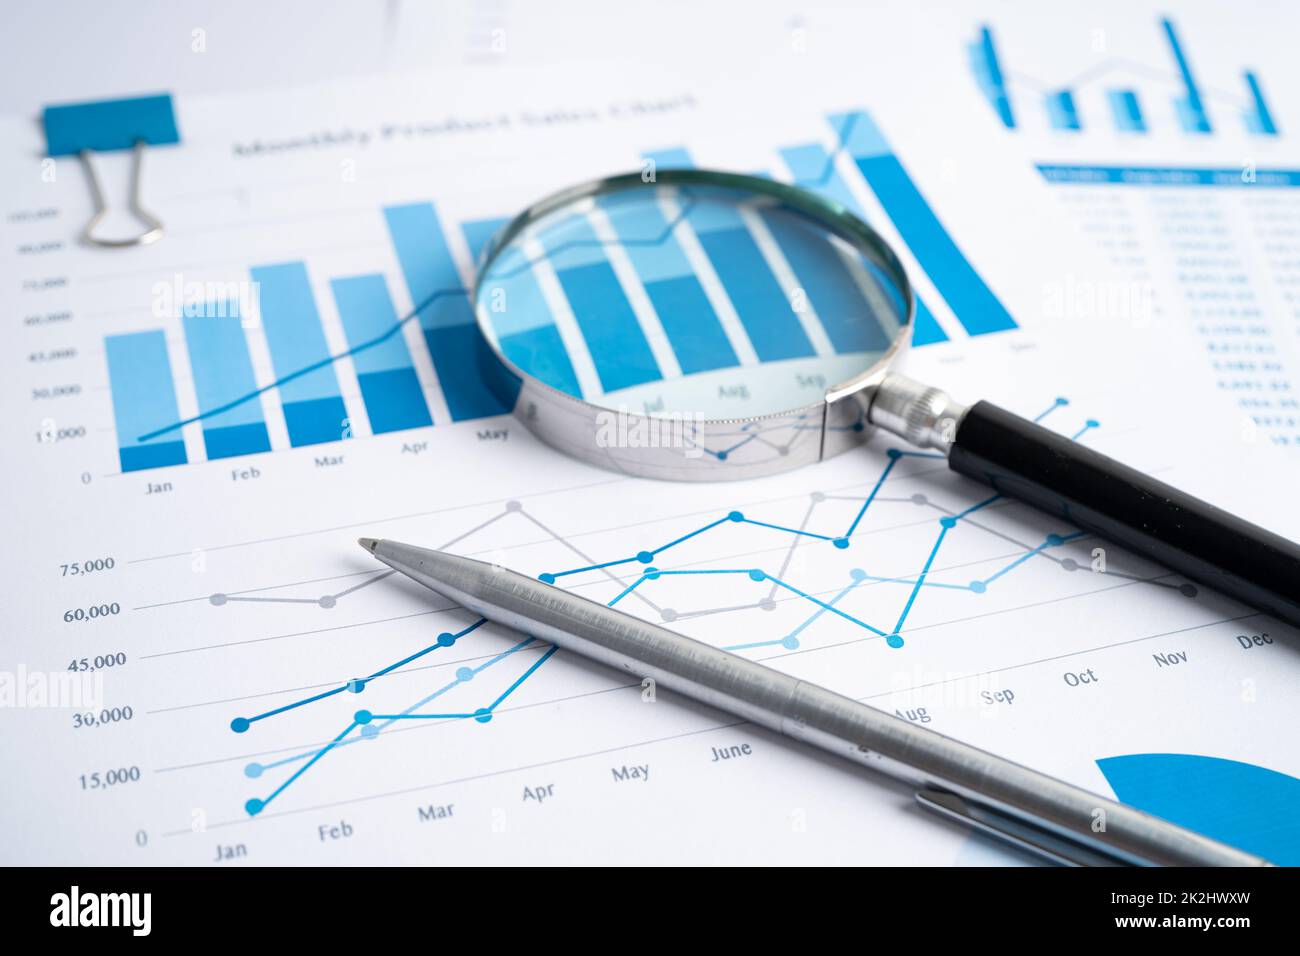 Vergrößerungsglas auf Karten Grafiken Papier. Finanzentwicklung, Bankkonto, Statistiken, Investment Analytic Research Data Economy, Börsenhandel, Geschäftsbüro Unternehmensmeeting-Konzept. Stockfoto